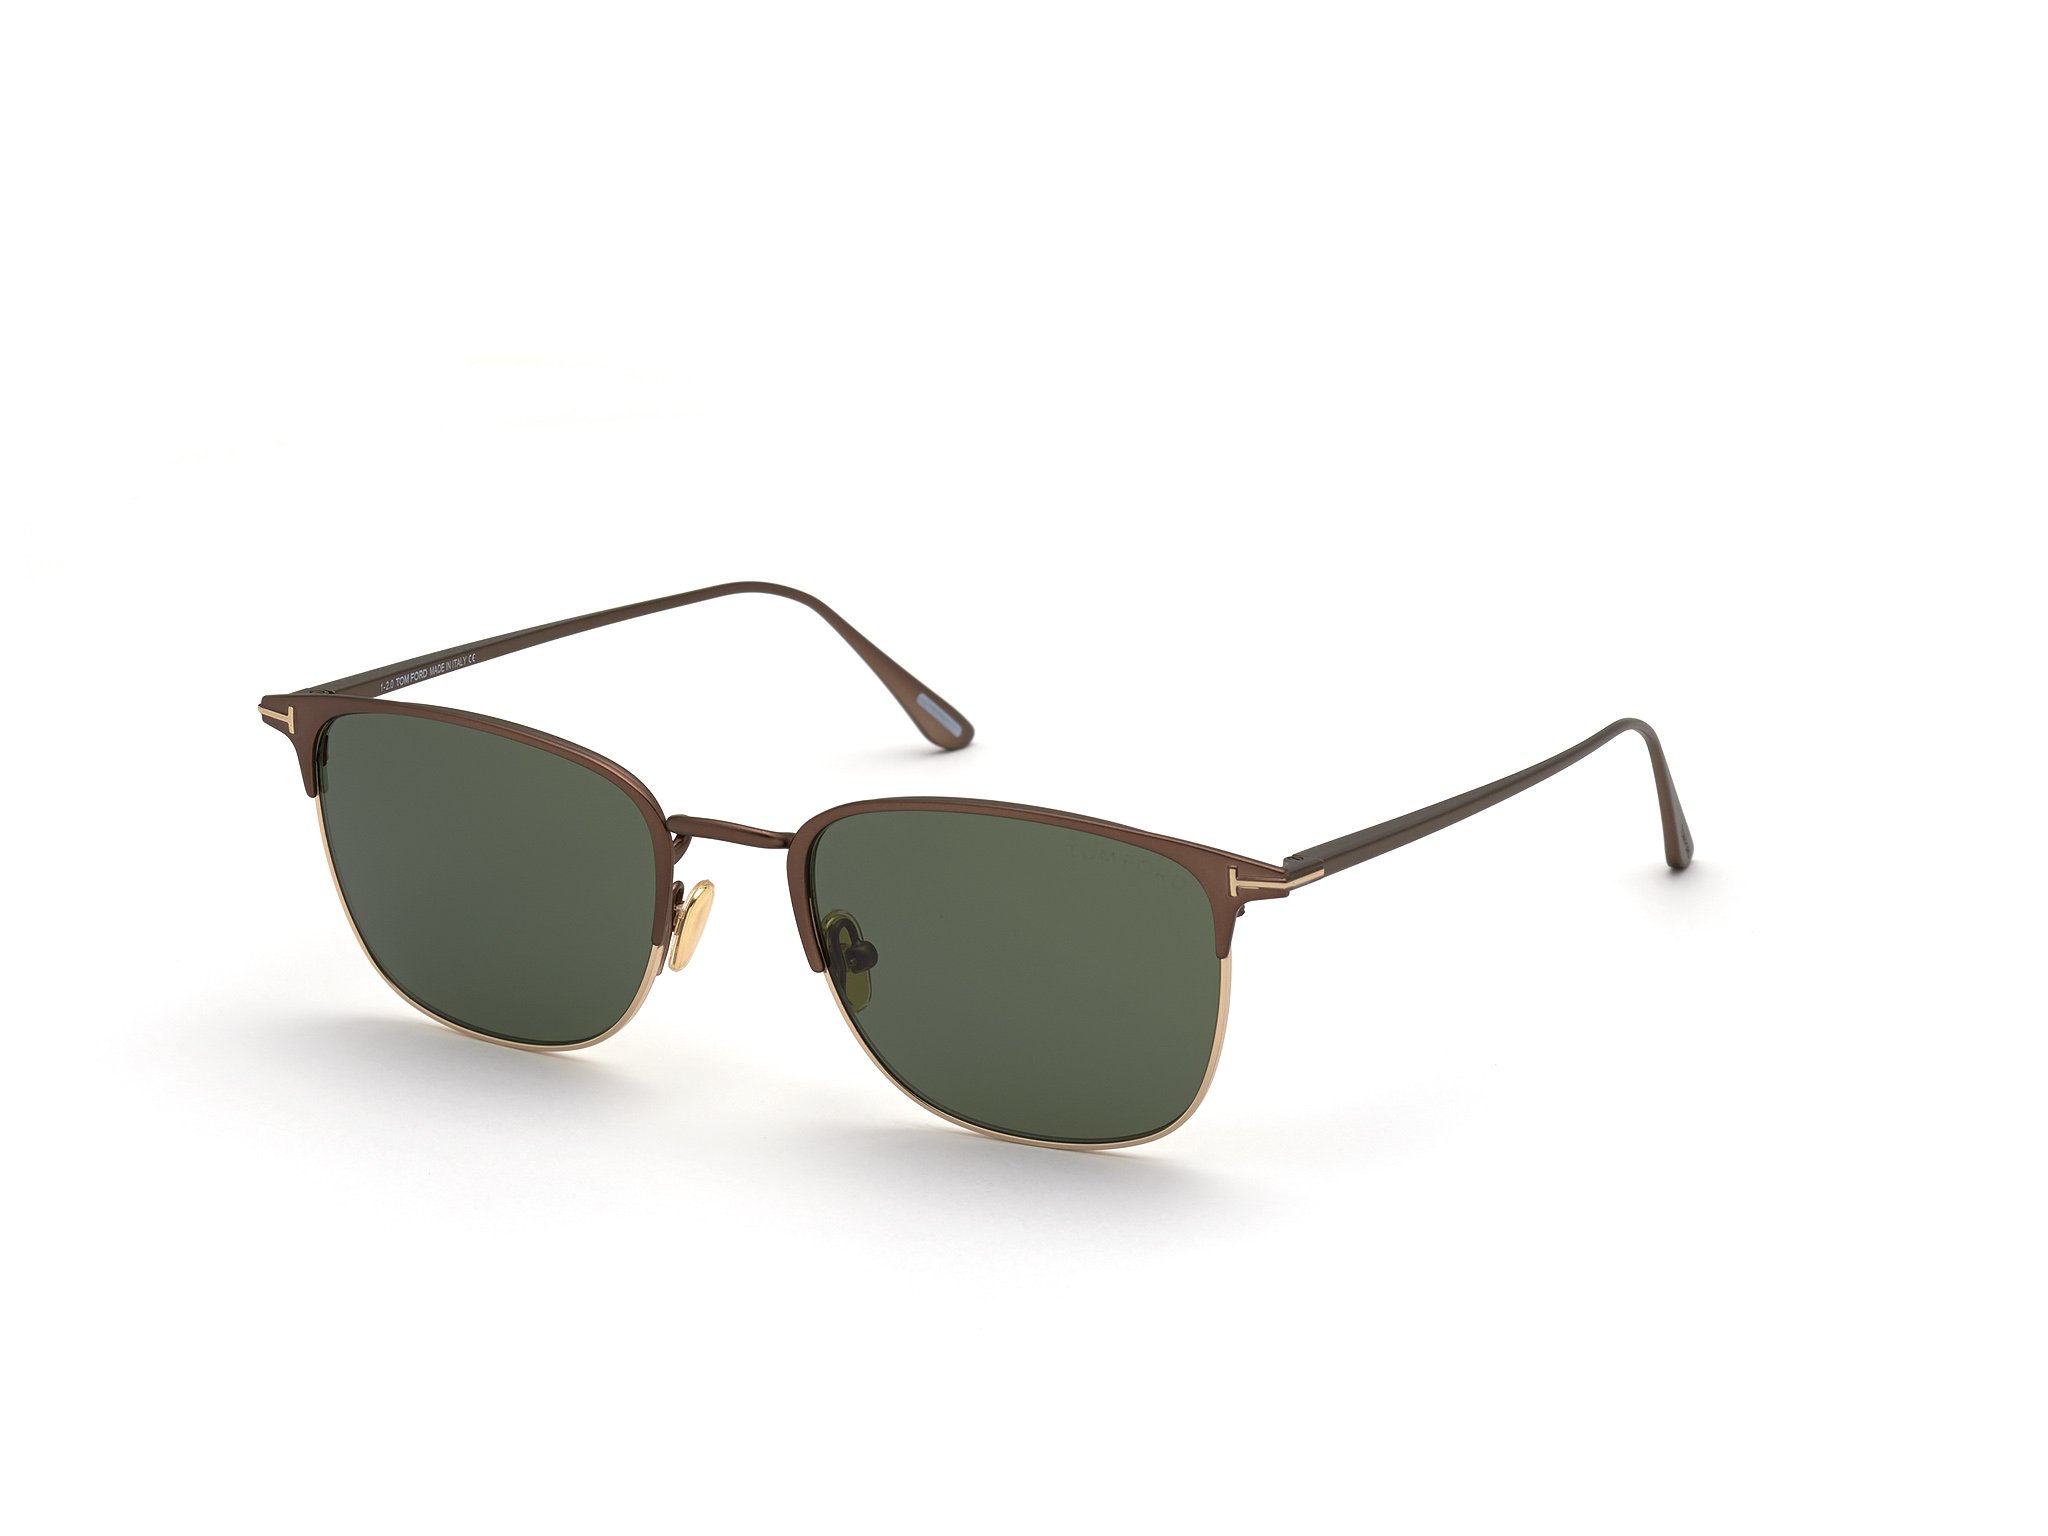 Das Bild zeigt die Sonnenbrille LIV FT0851 von der Marke Tom Ford in braun